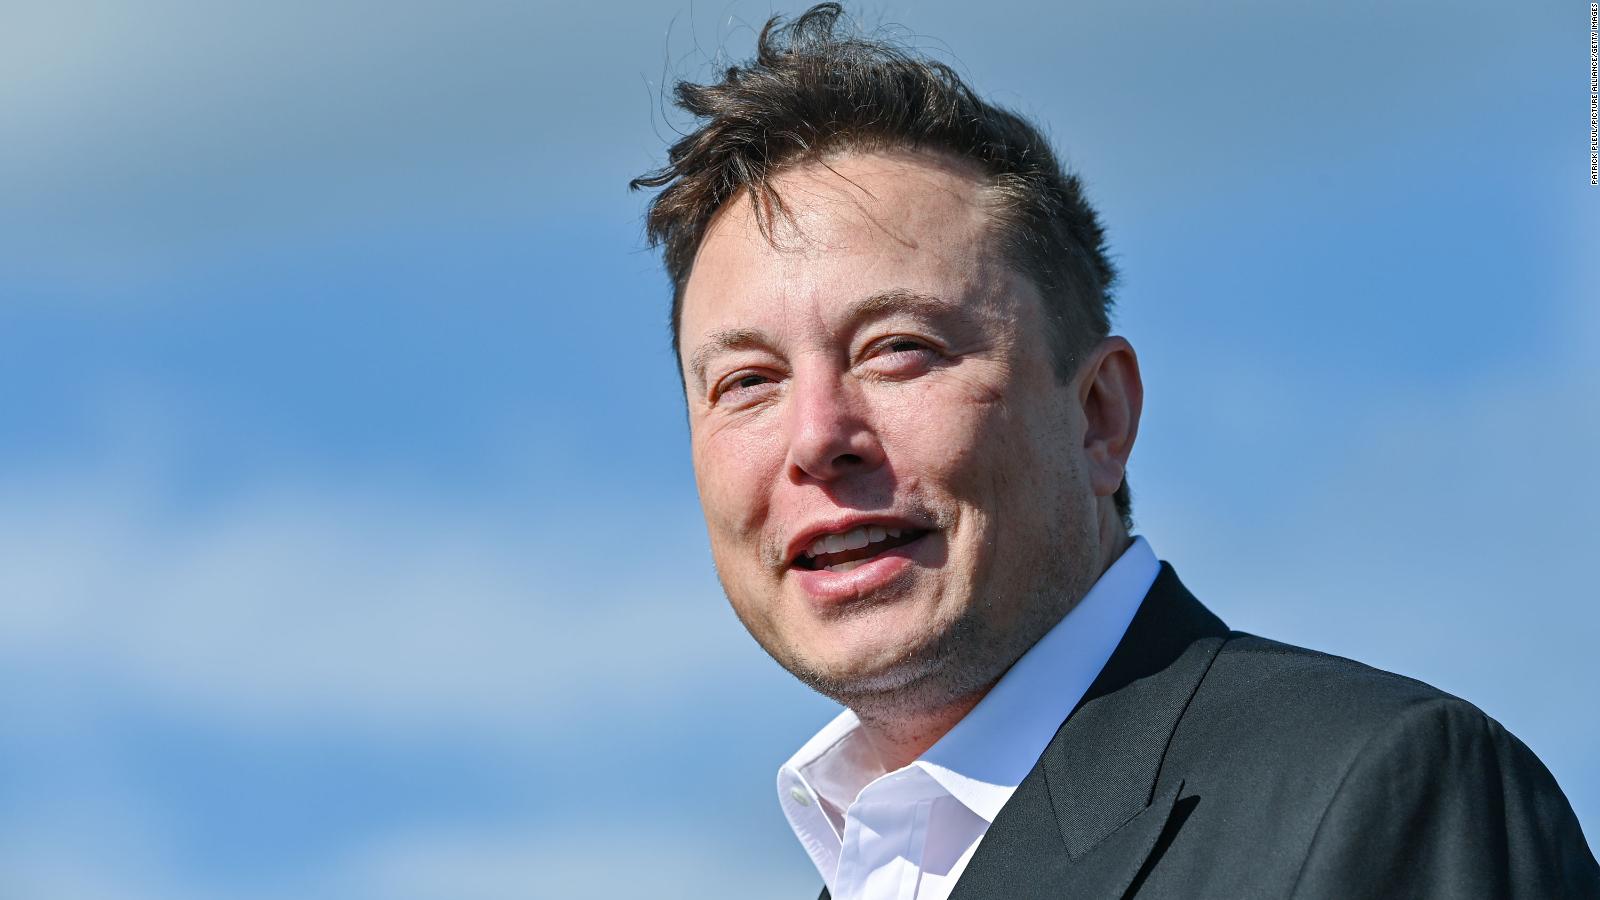 Elon muskusas: aš nesu satoshi - aš pamiršau, kur įdėjau savo bitukinus - Pranešimai spaudai 